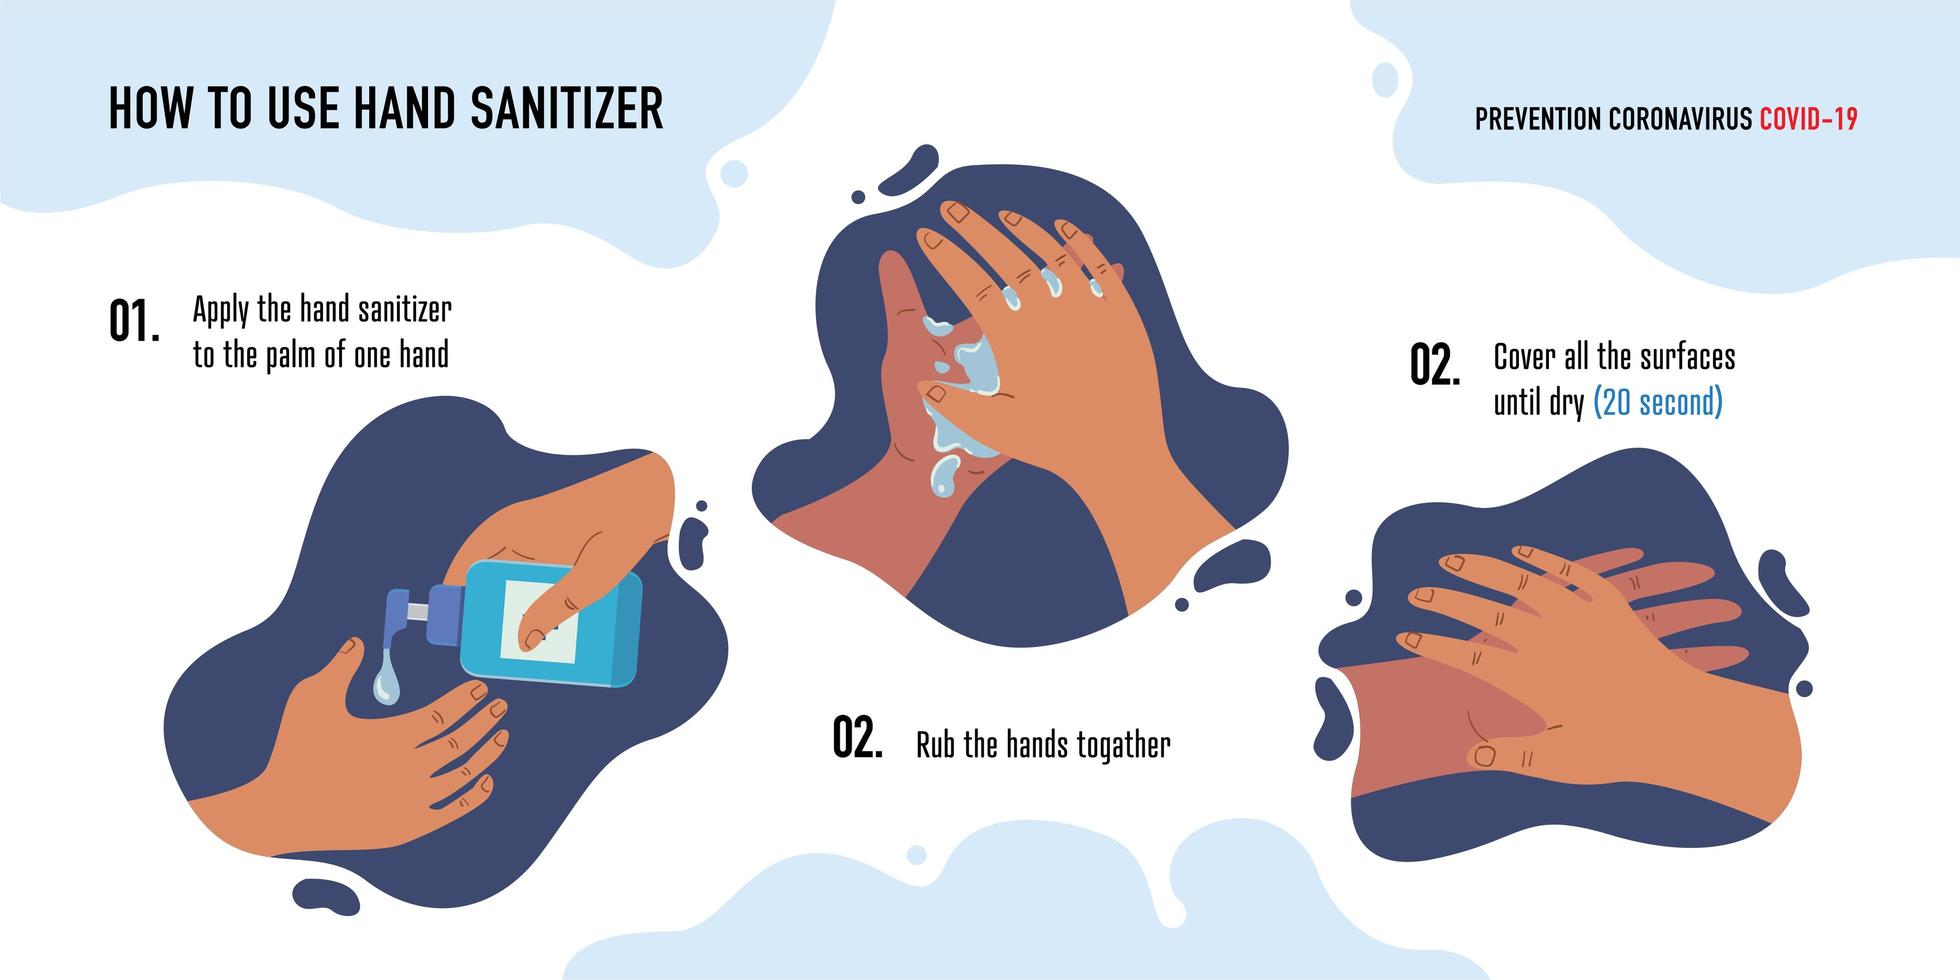 hur man använder handdesinfektionsmedel skyddar koronavirus, omslag-19 illustration vektor